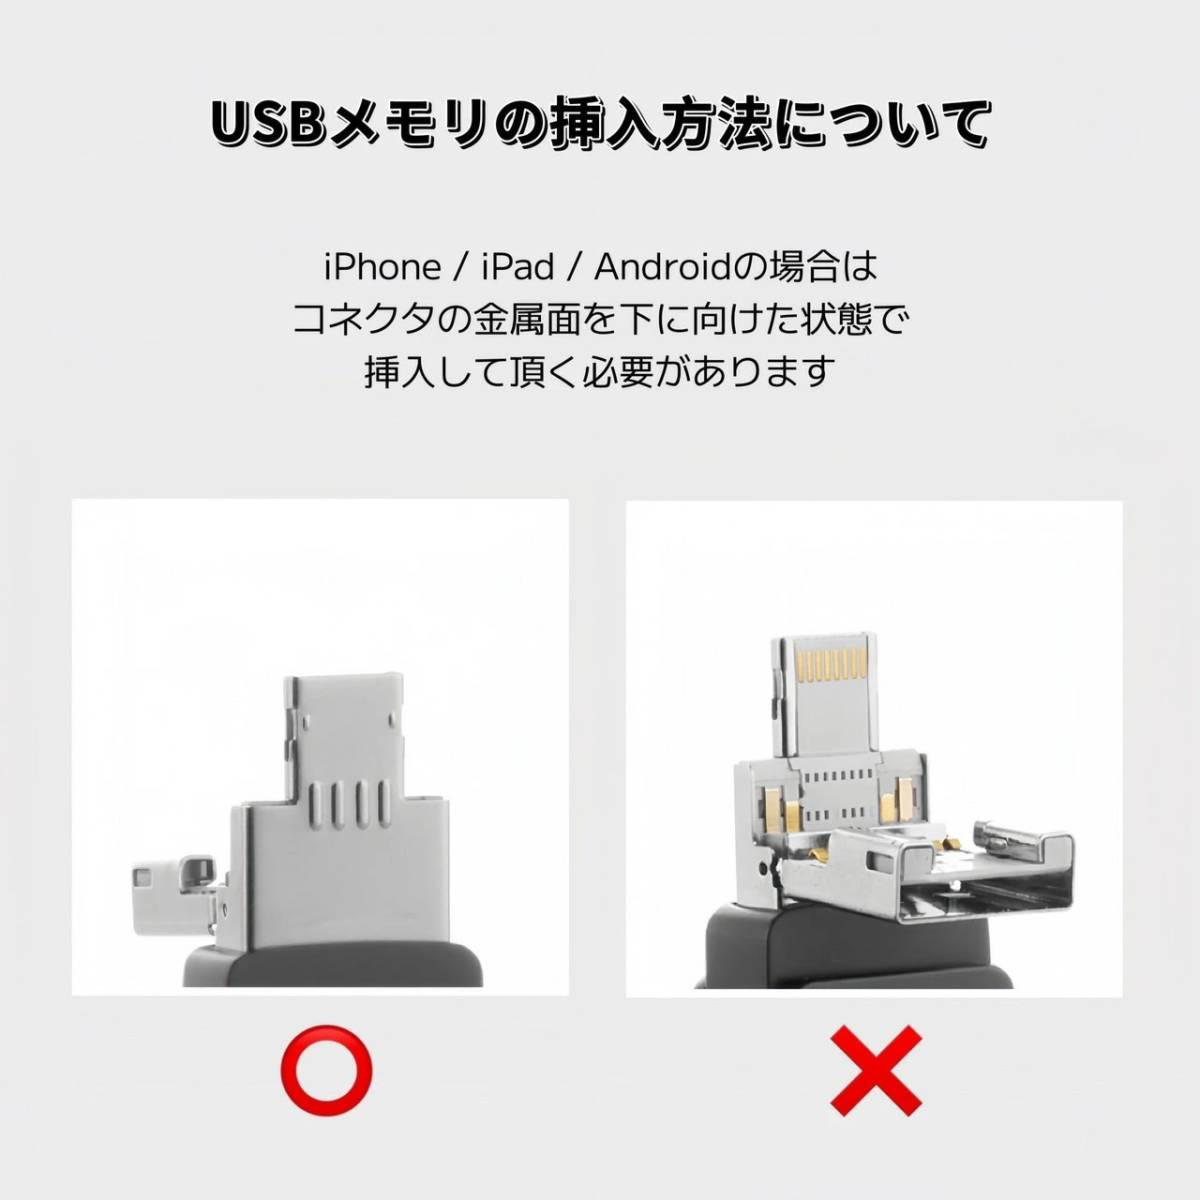 iPhone USBメモリ 128GB 4in1 シルバー スマホ Android Mac USB3.0 フラッシュメモリ